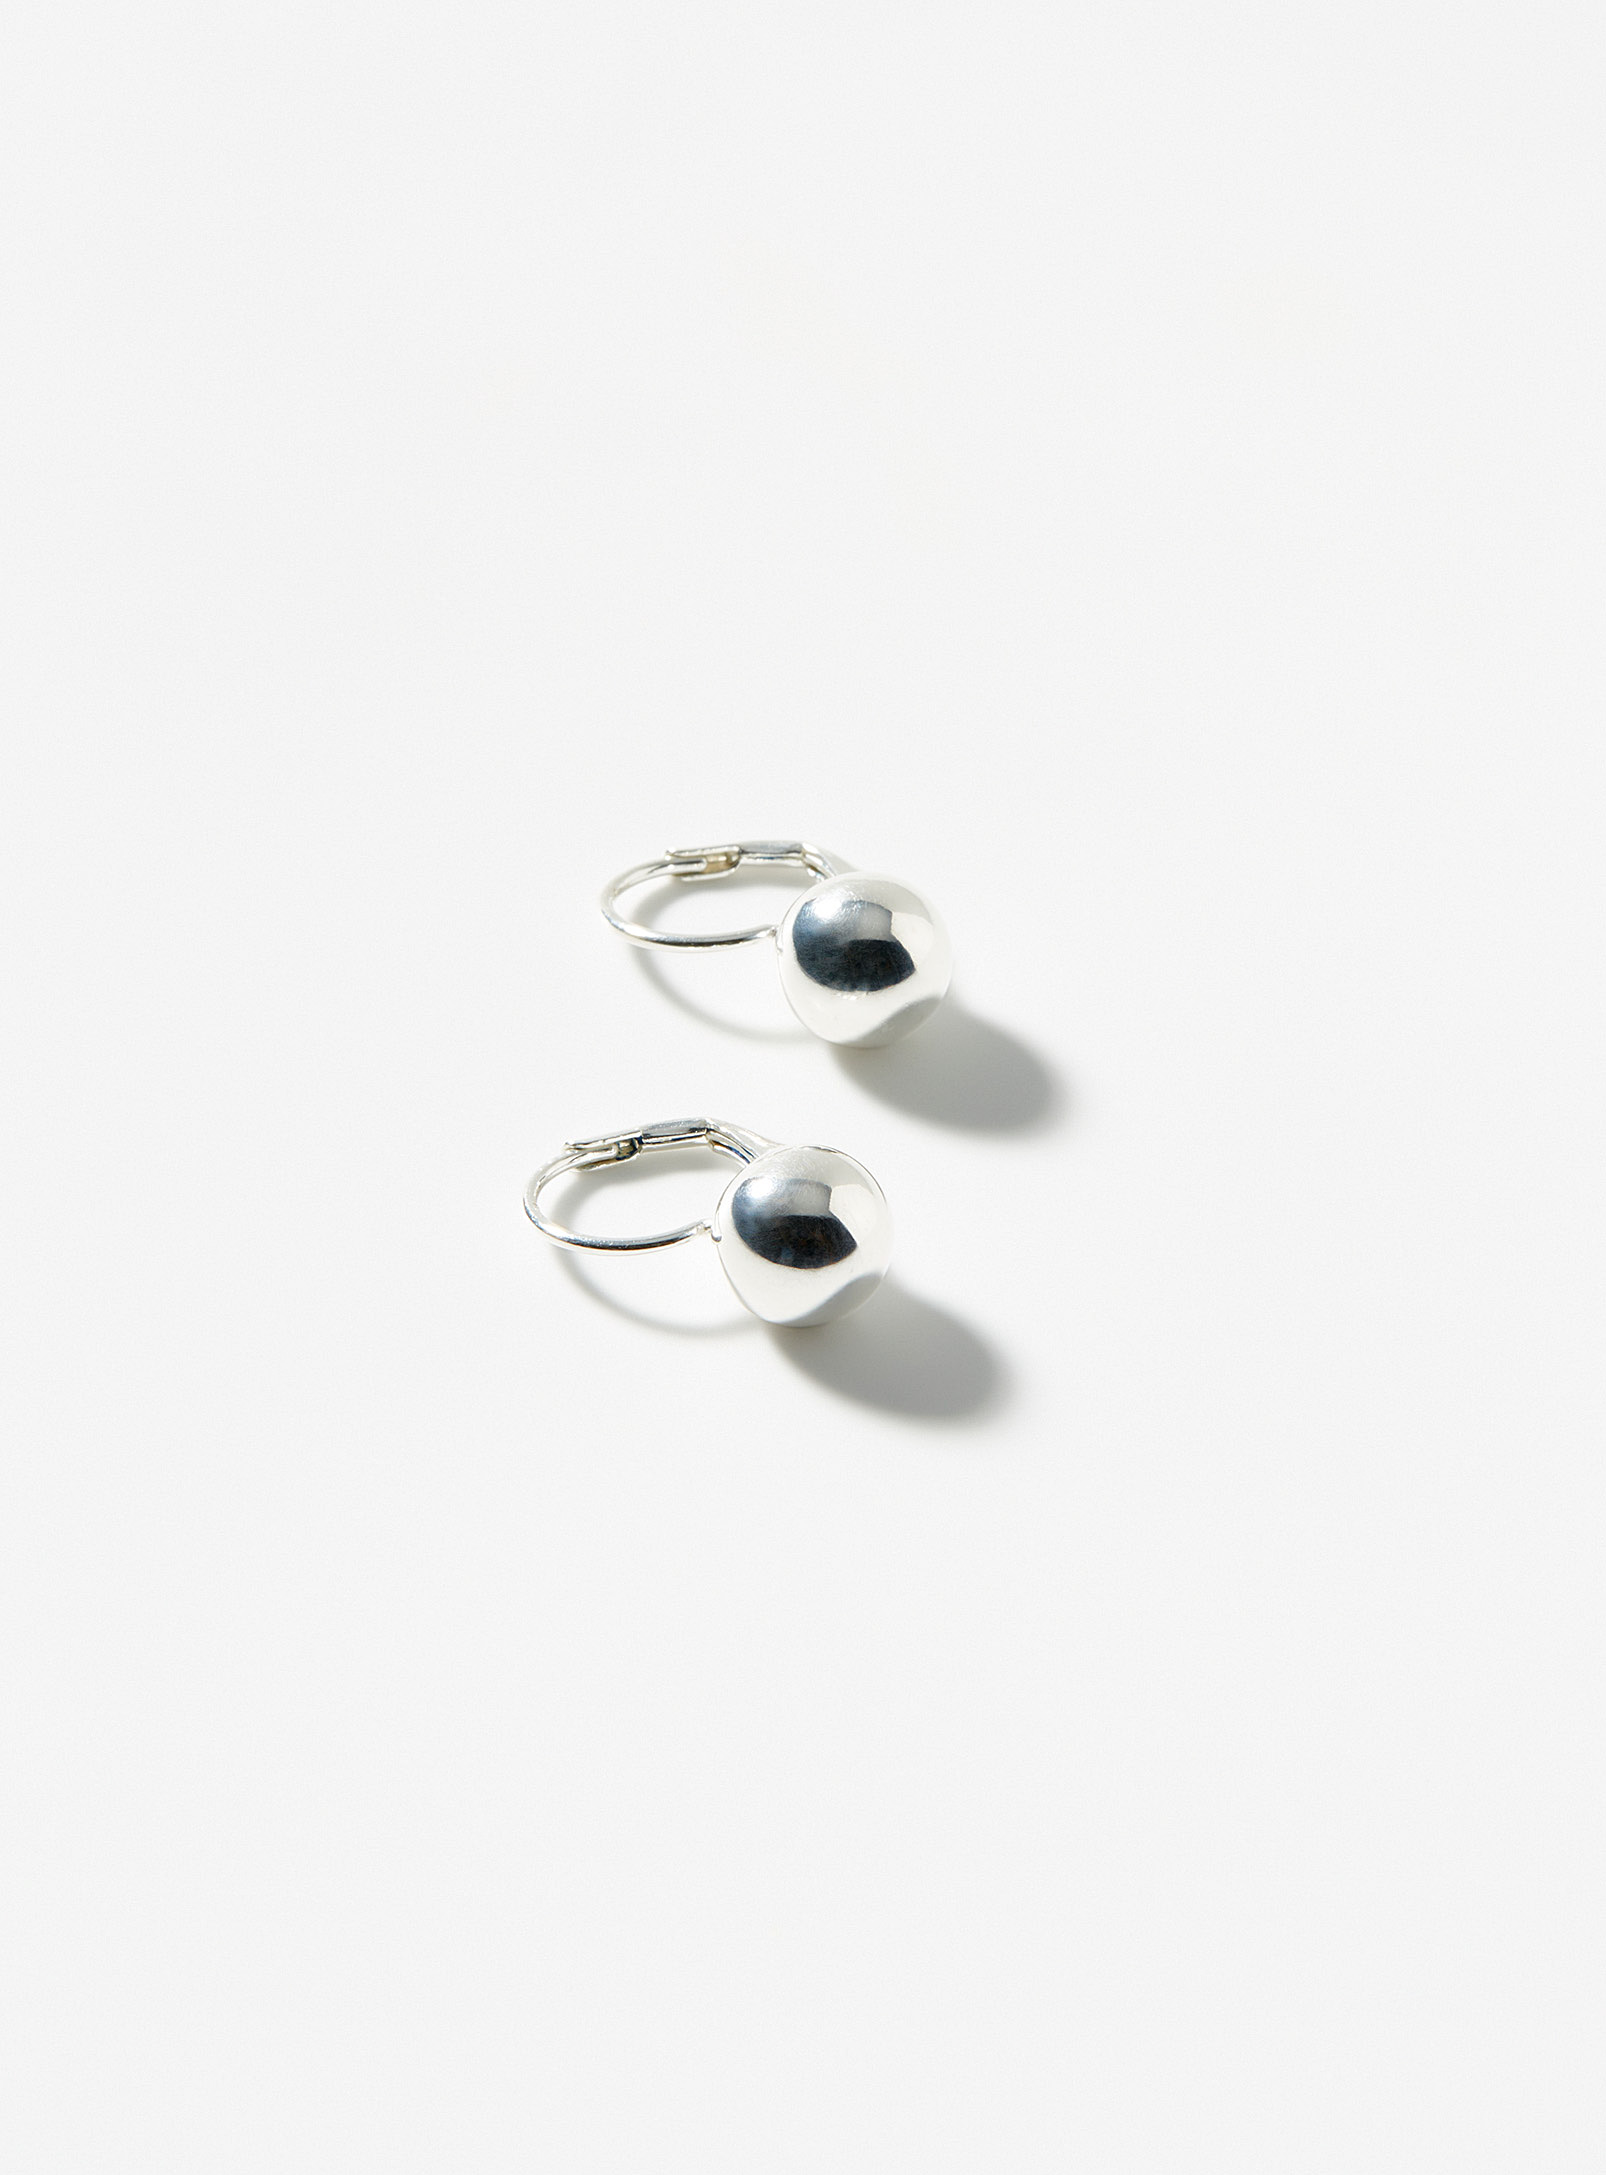 Clio blue - Les boucles d'oreilles billes argent